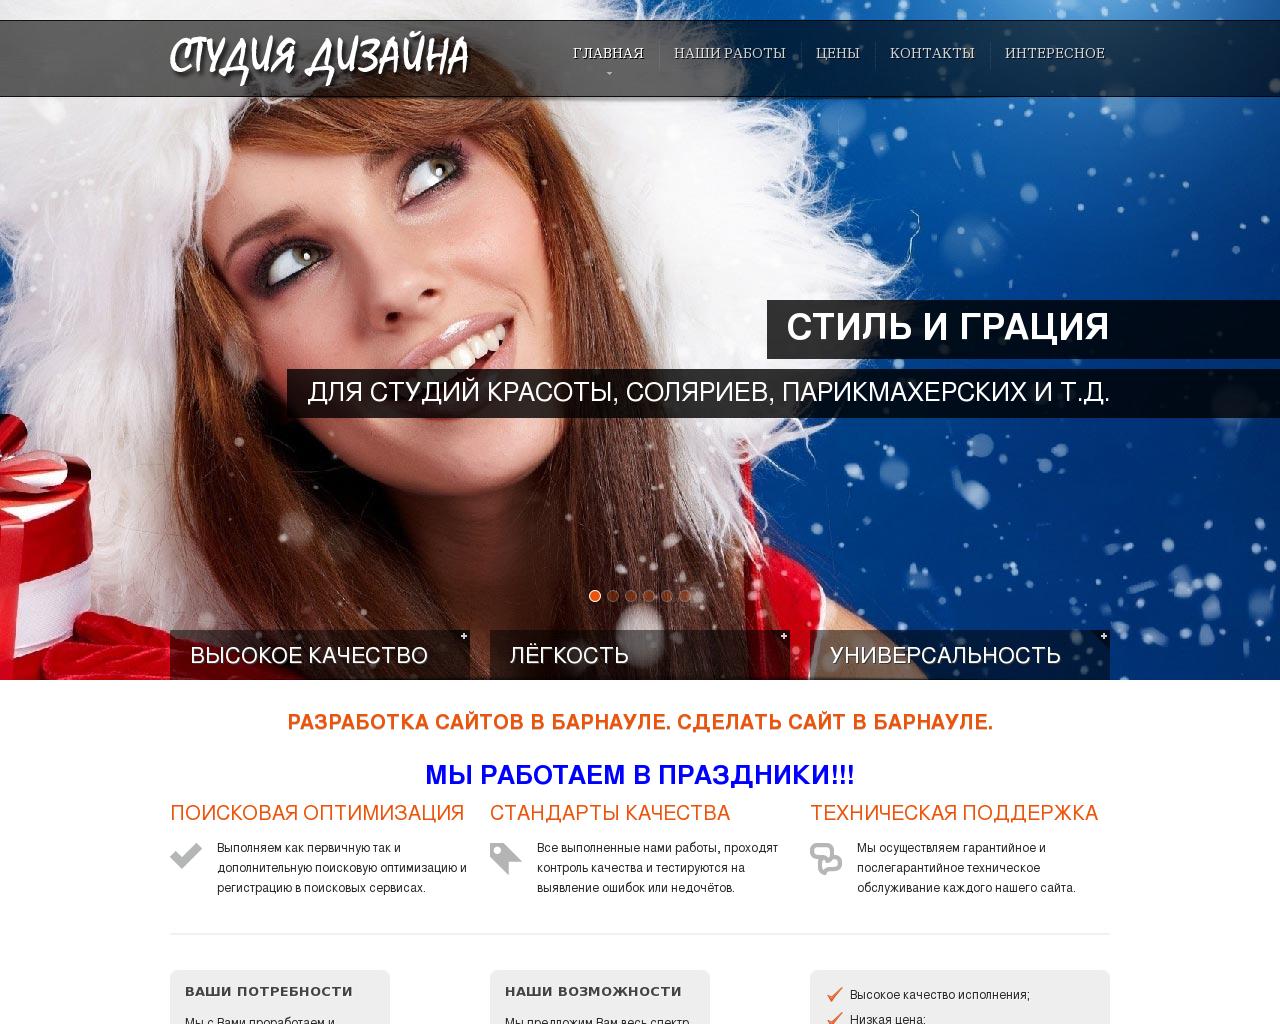 Изображение сайта sozdaem-saity.ru в разрешении 1280x1024